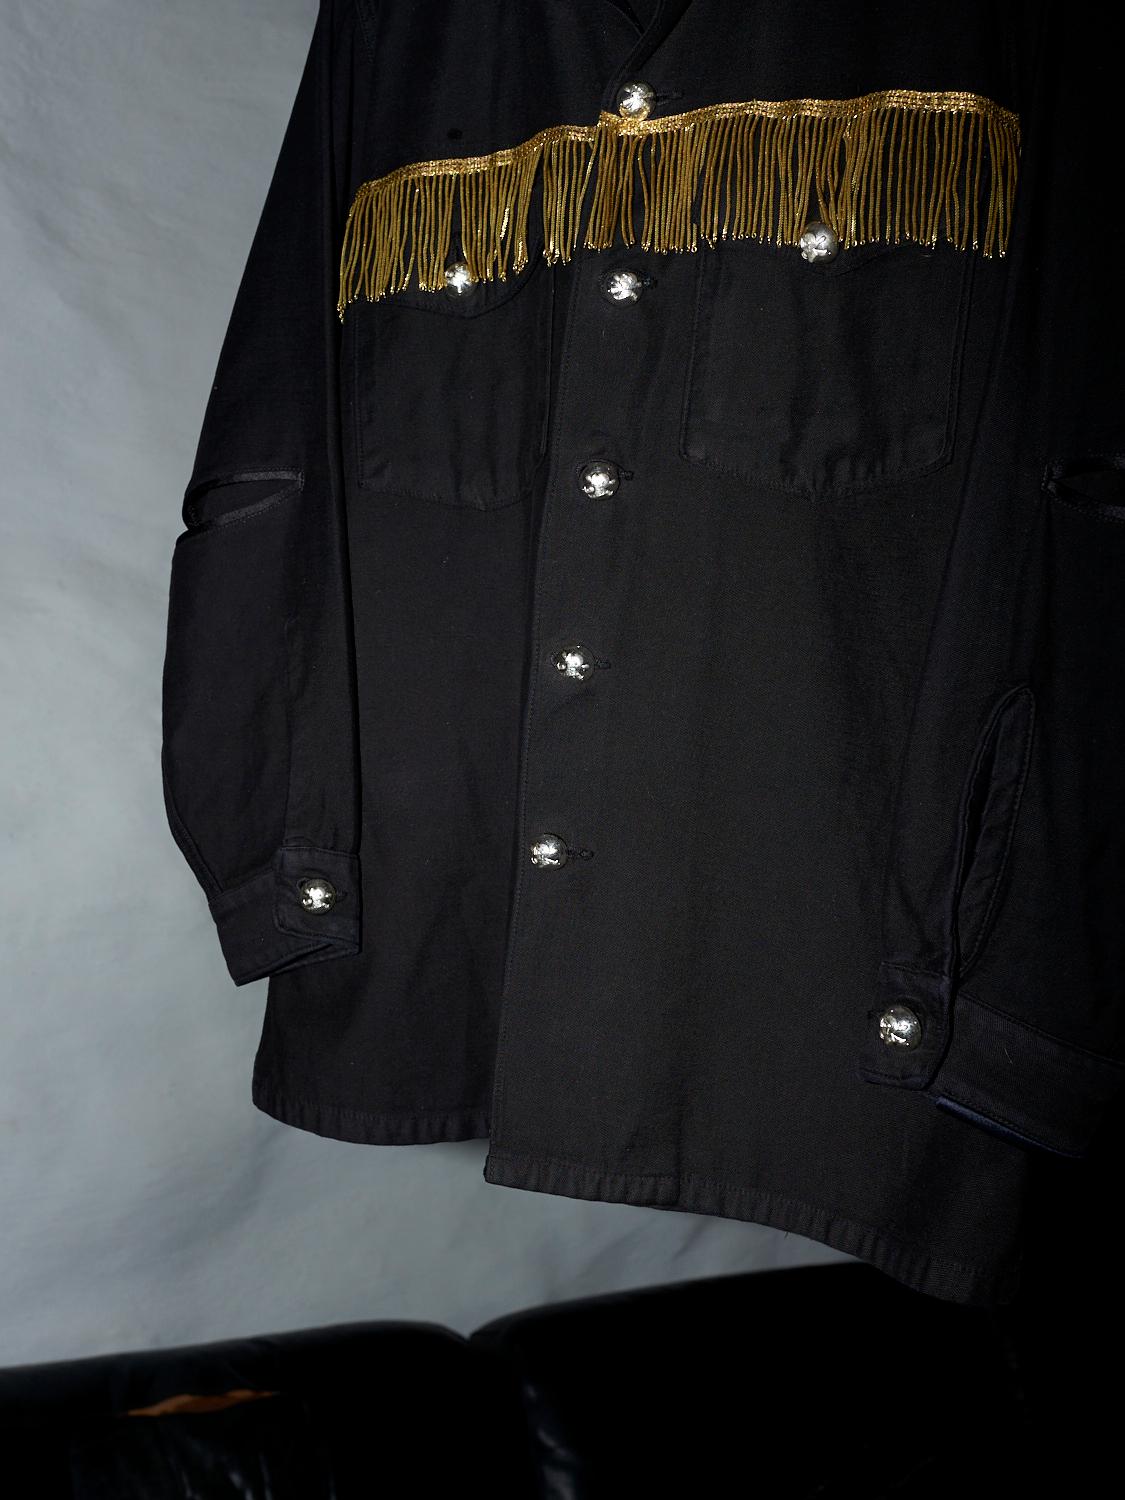 Embellished Fringe Jacket Black Silver Buttons Military Shirt J Dauphin 4